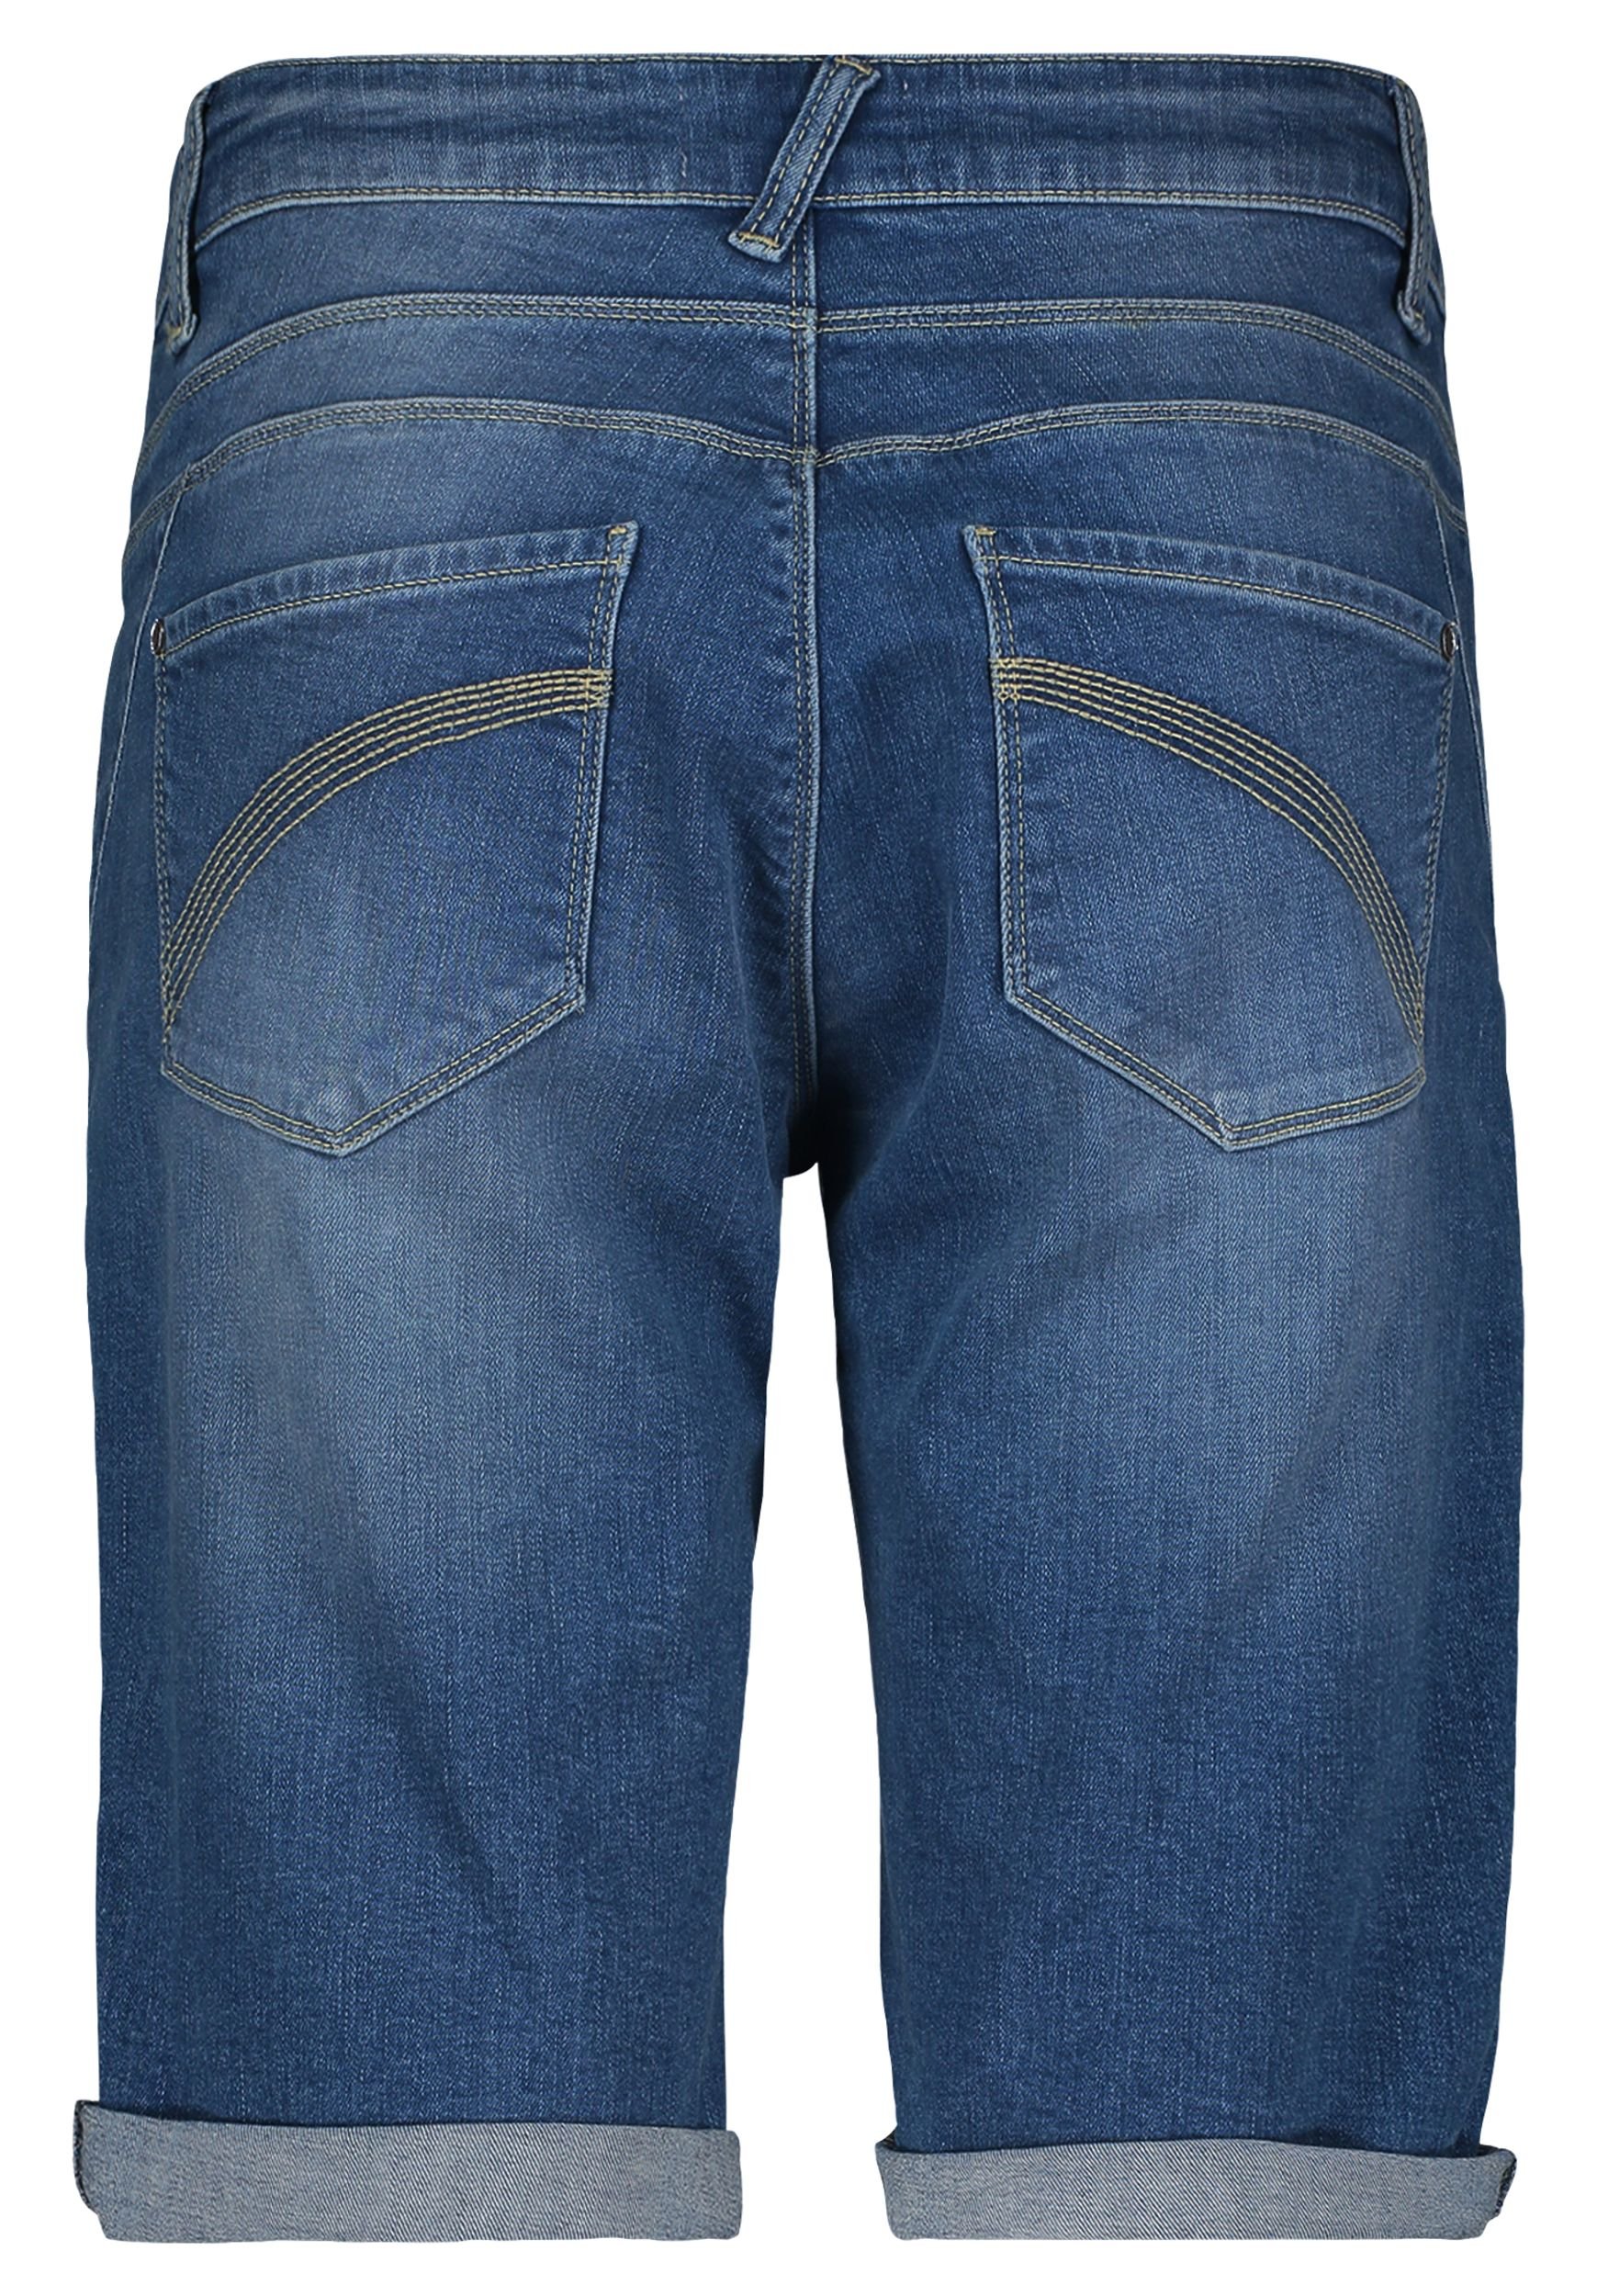 Shorts Jeans, Middle/Blue/Denim